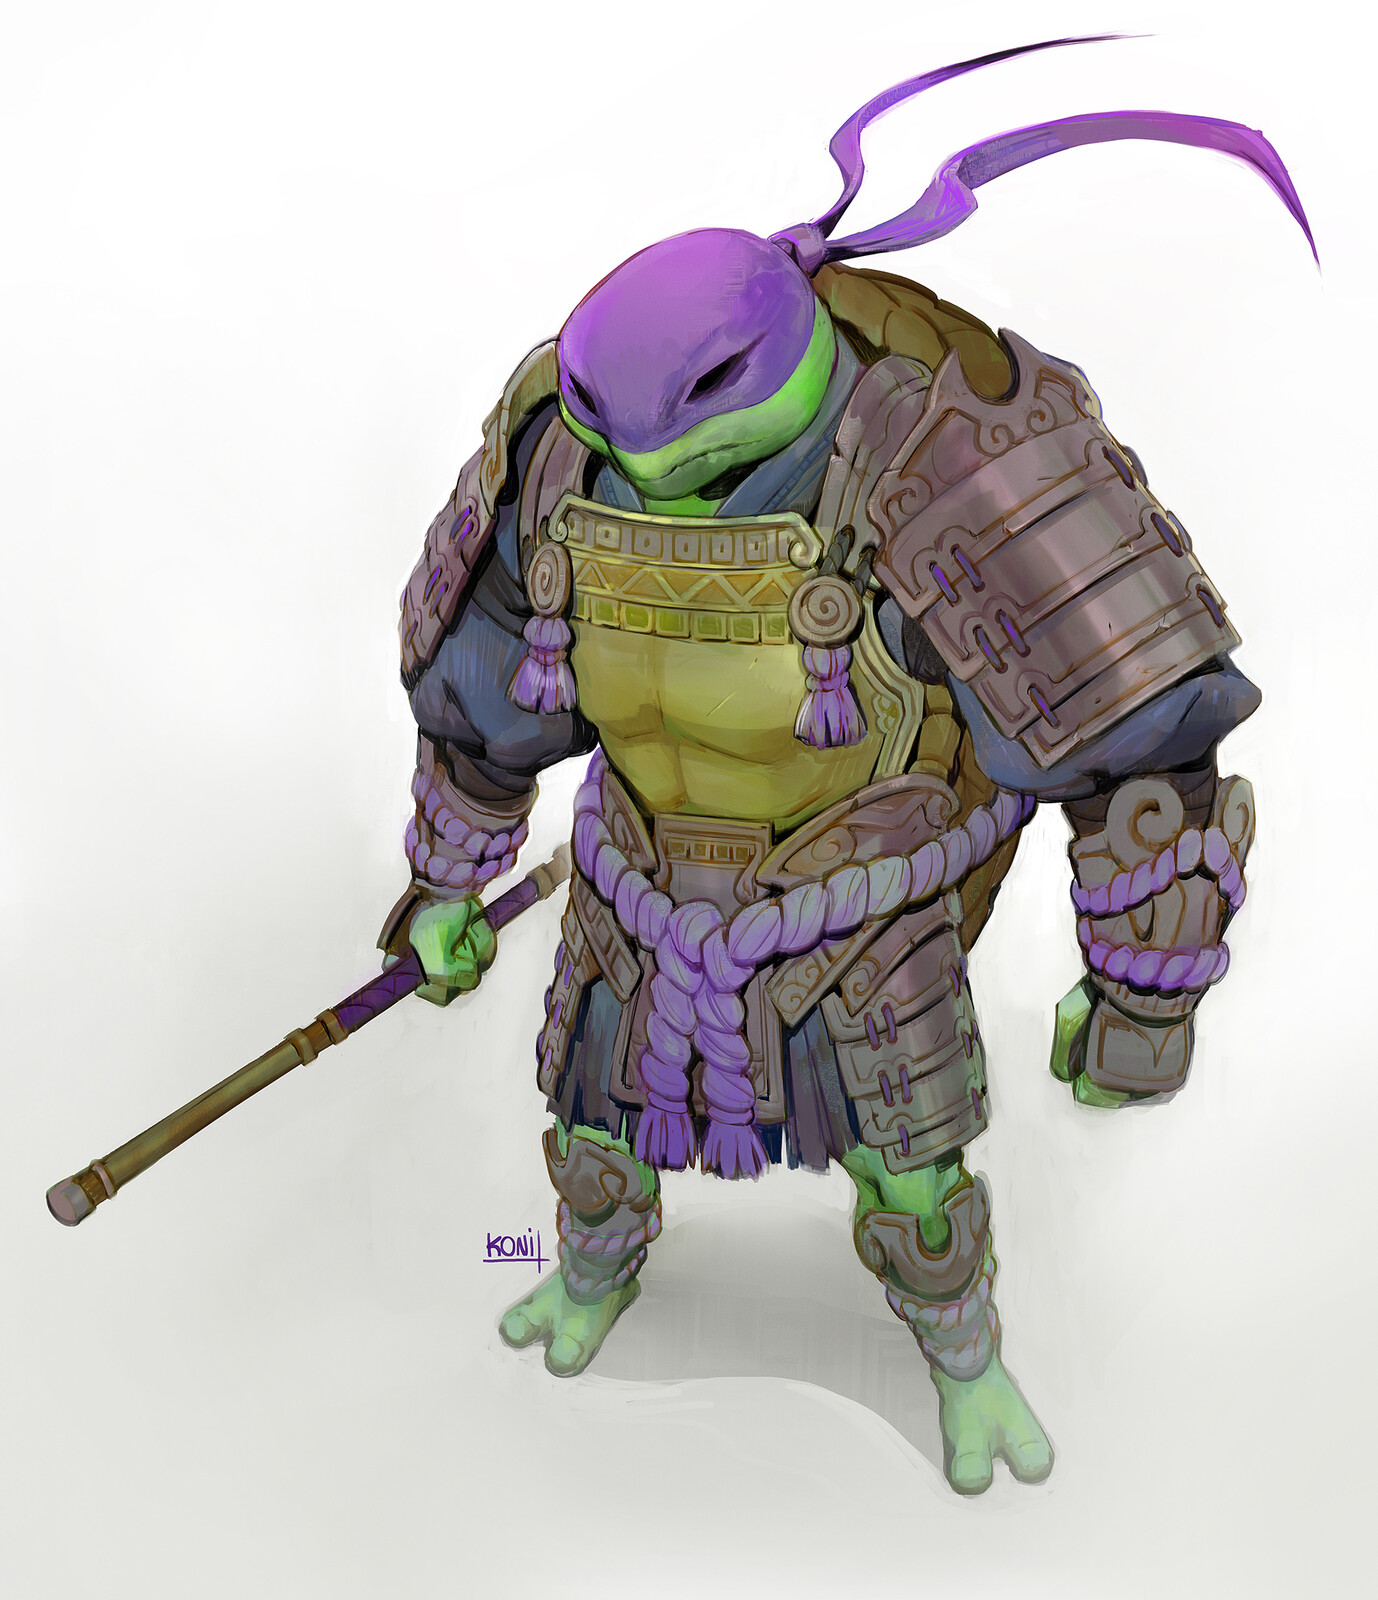 My Donatello